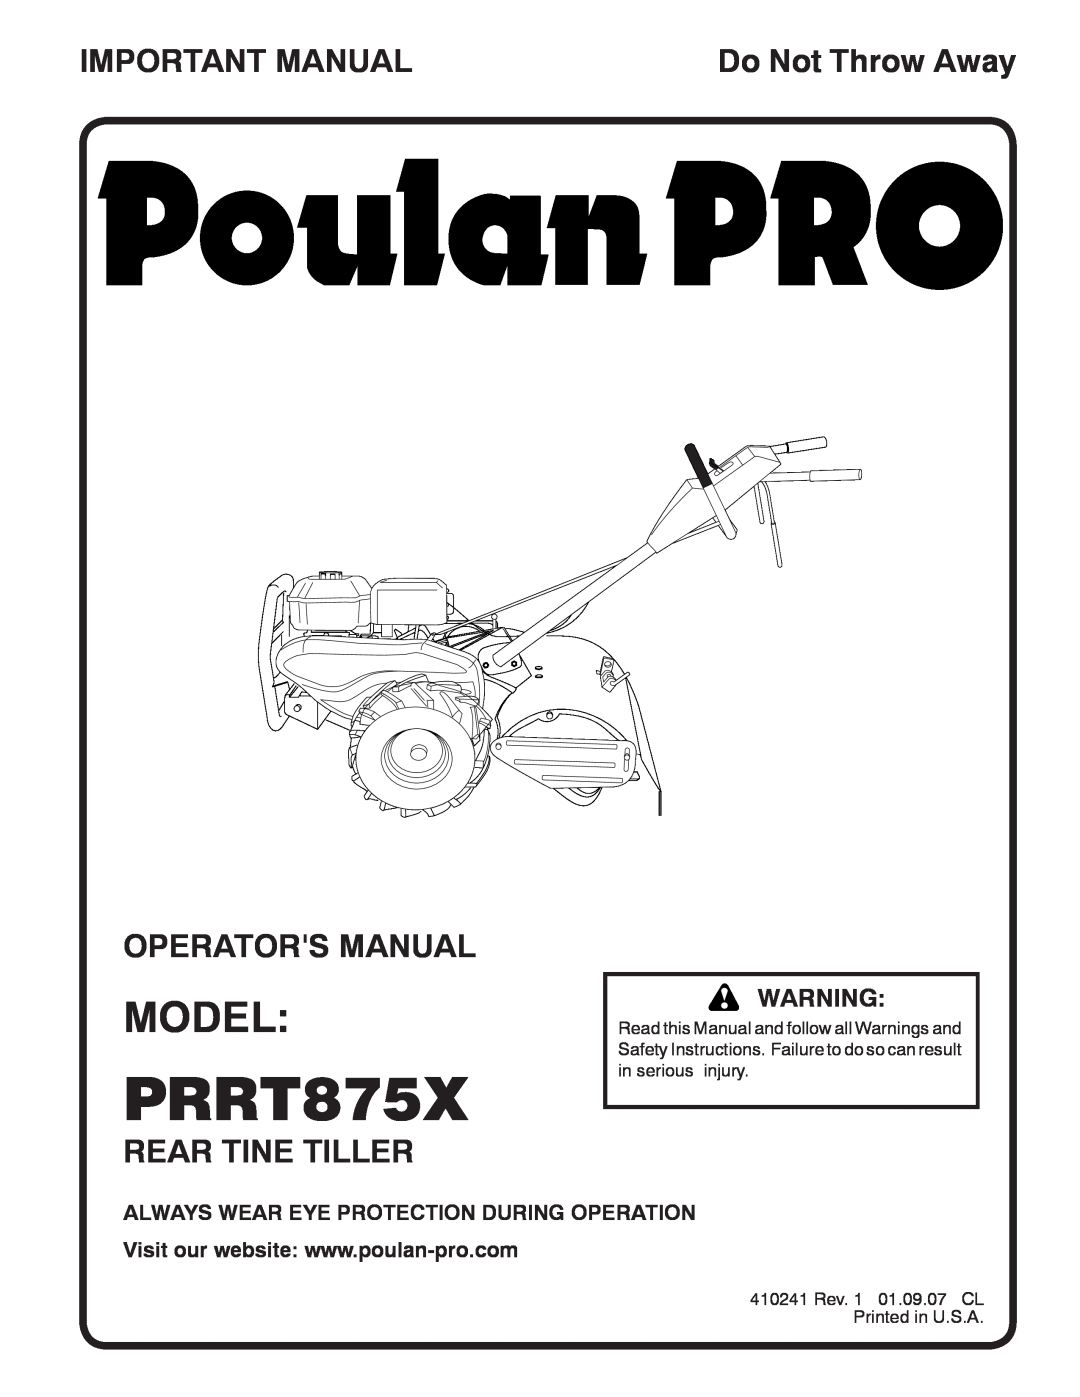 Poulan PRRT875X manual Model, Important Manual, Operators Manual, Rear Tine Tiller, Do Not Throw Away 